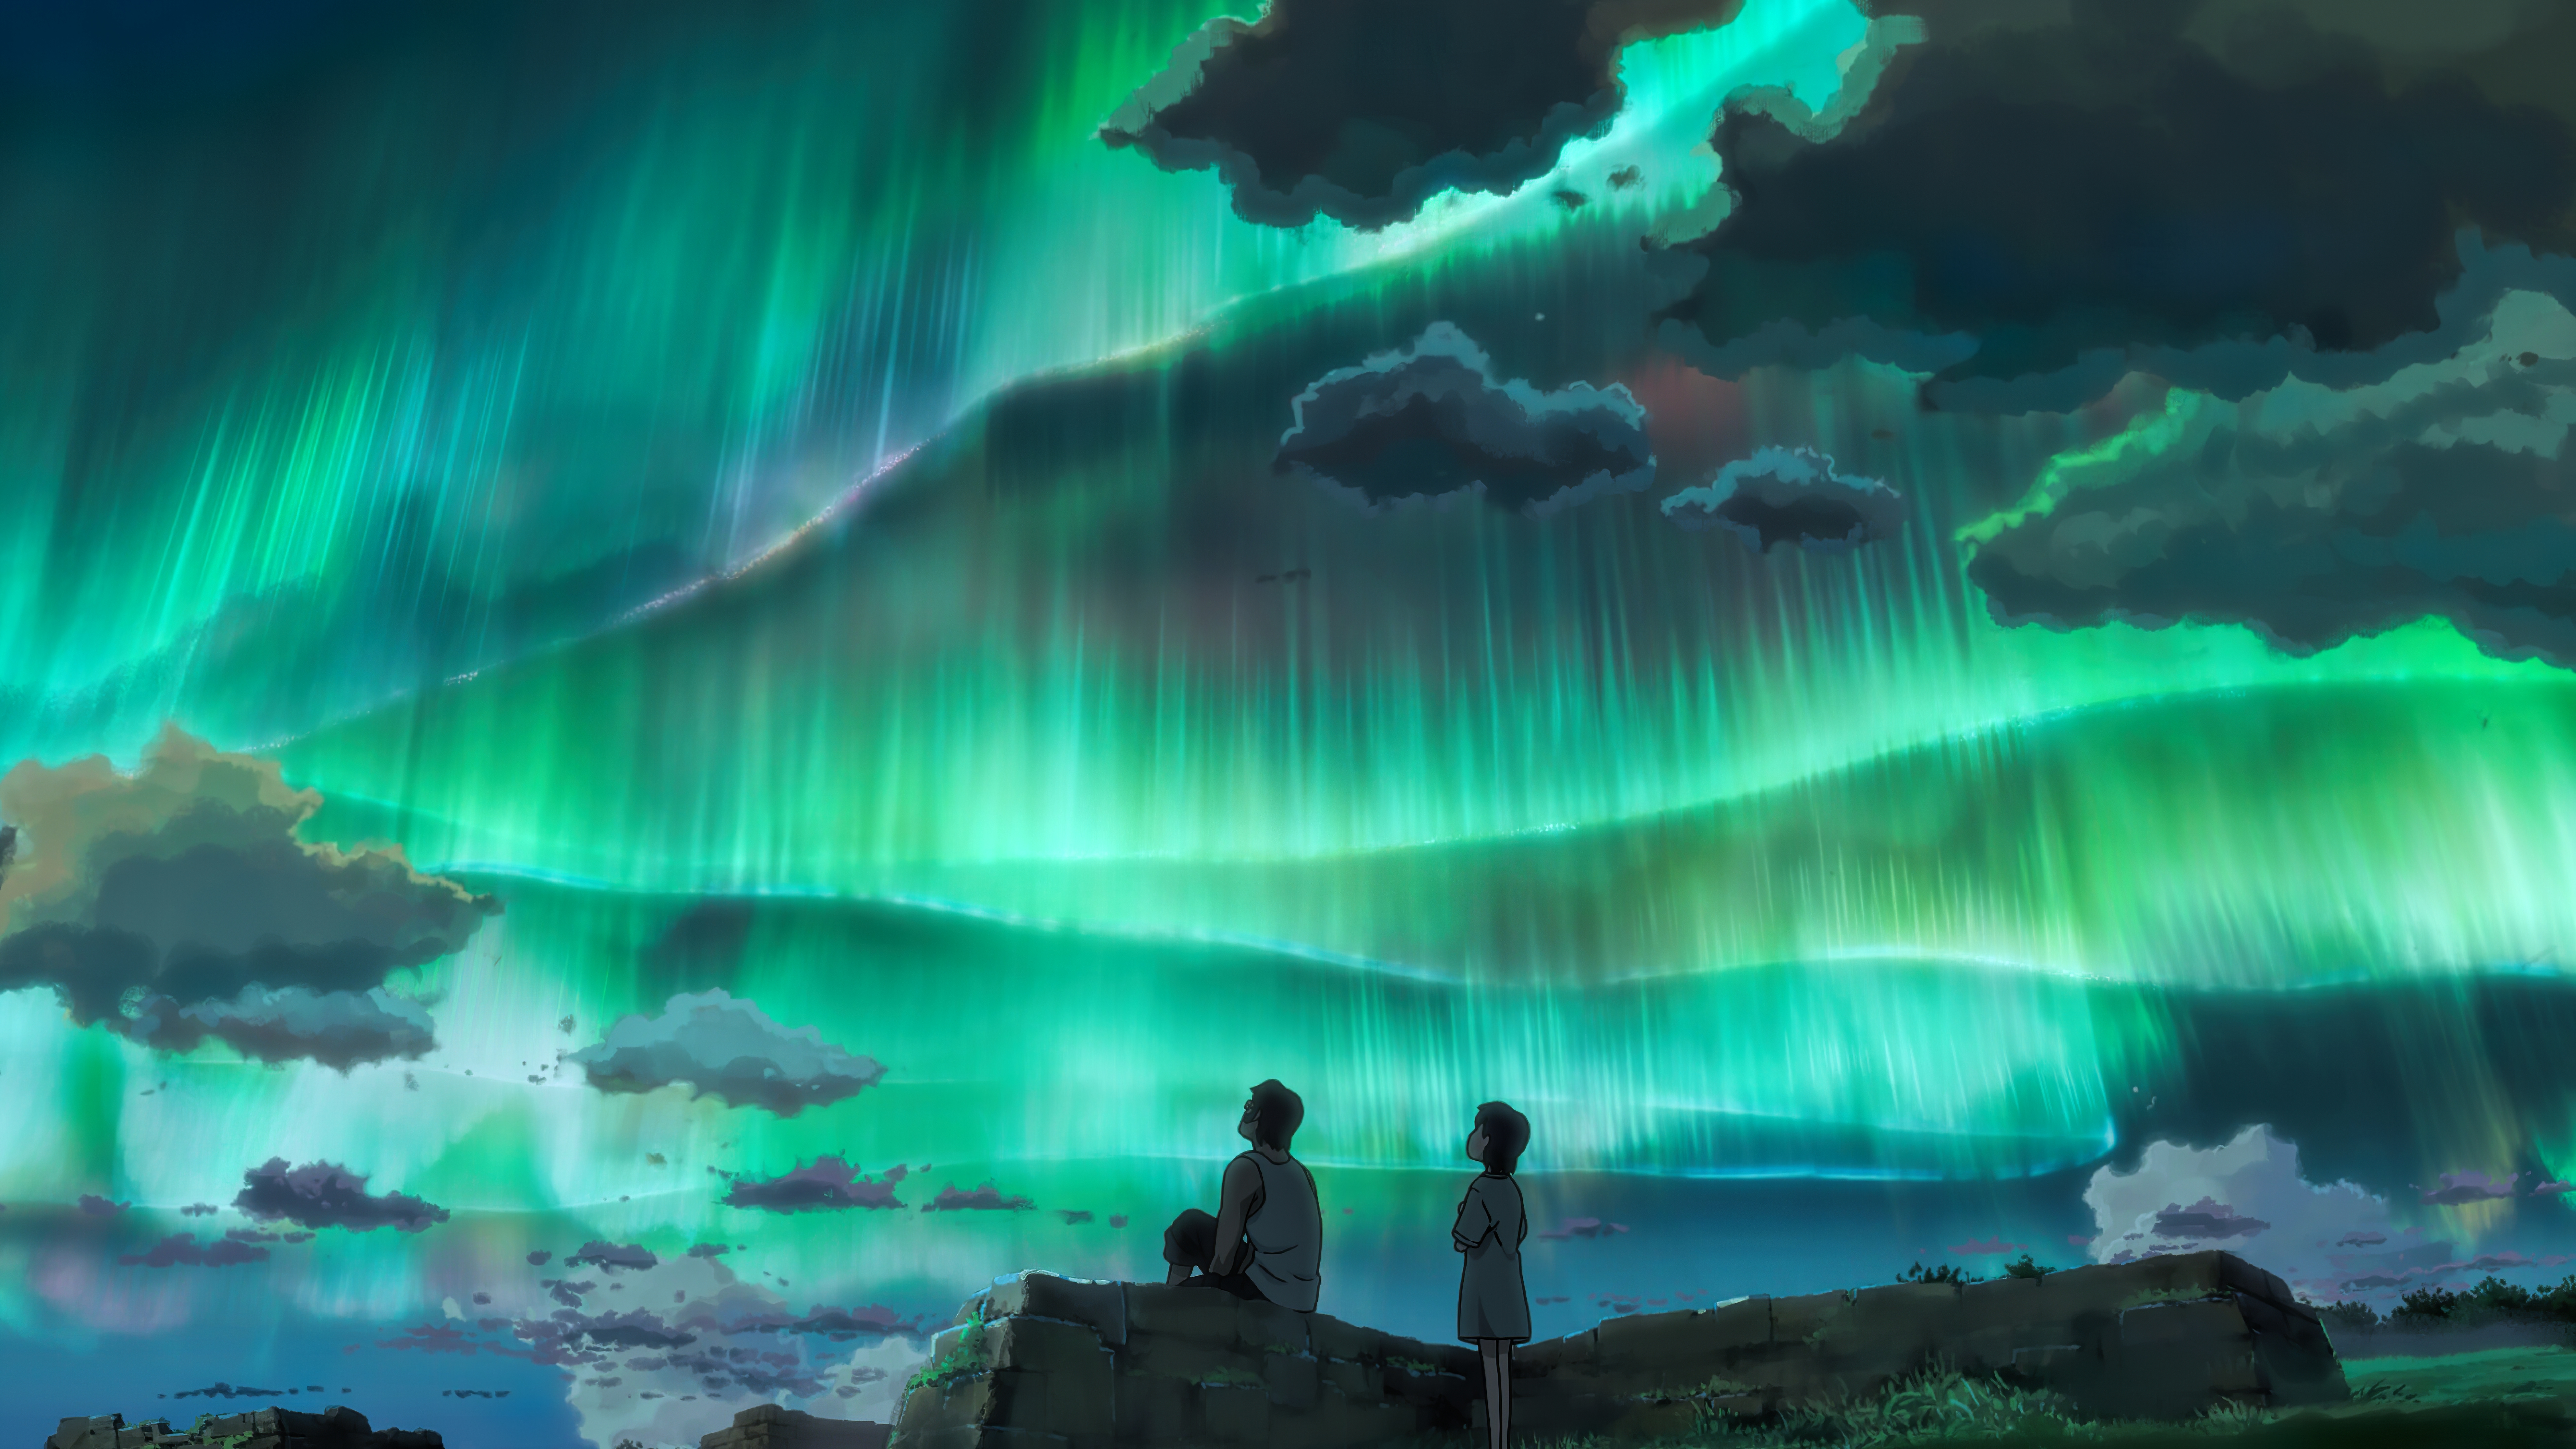 Hình nền Anime Children Who Chase Lost Voices độ phân giải cao 8k thật là tuyệt vời. Bạn sẽ được chiêm ngưỡng những cảnh quan tuyệt đẹp của thế giới trong phim Anime này. Hãy cùng lắng nghe tiếng động của tự nhiên và trải nghiệm những giây phút tuyệt vời qua những hình nền Anime độ phân giải cao 8k này.